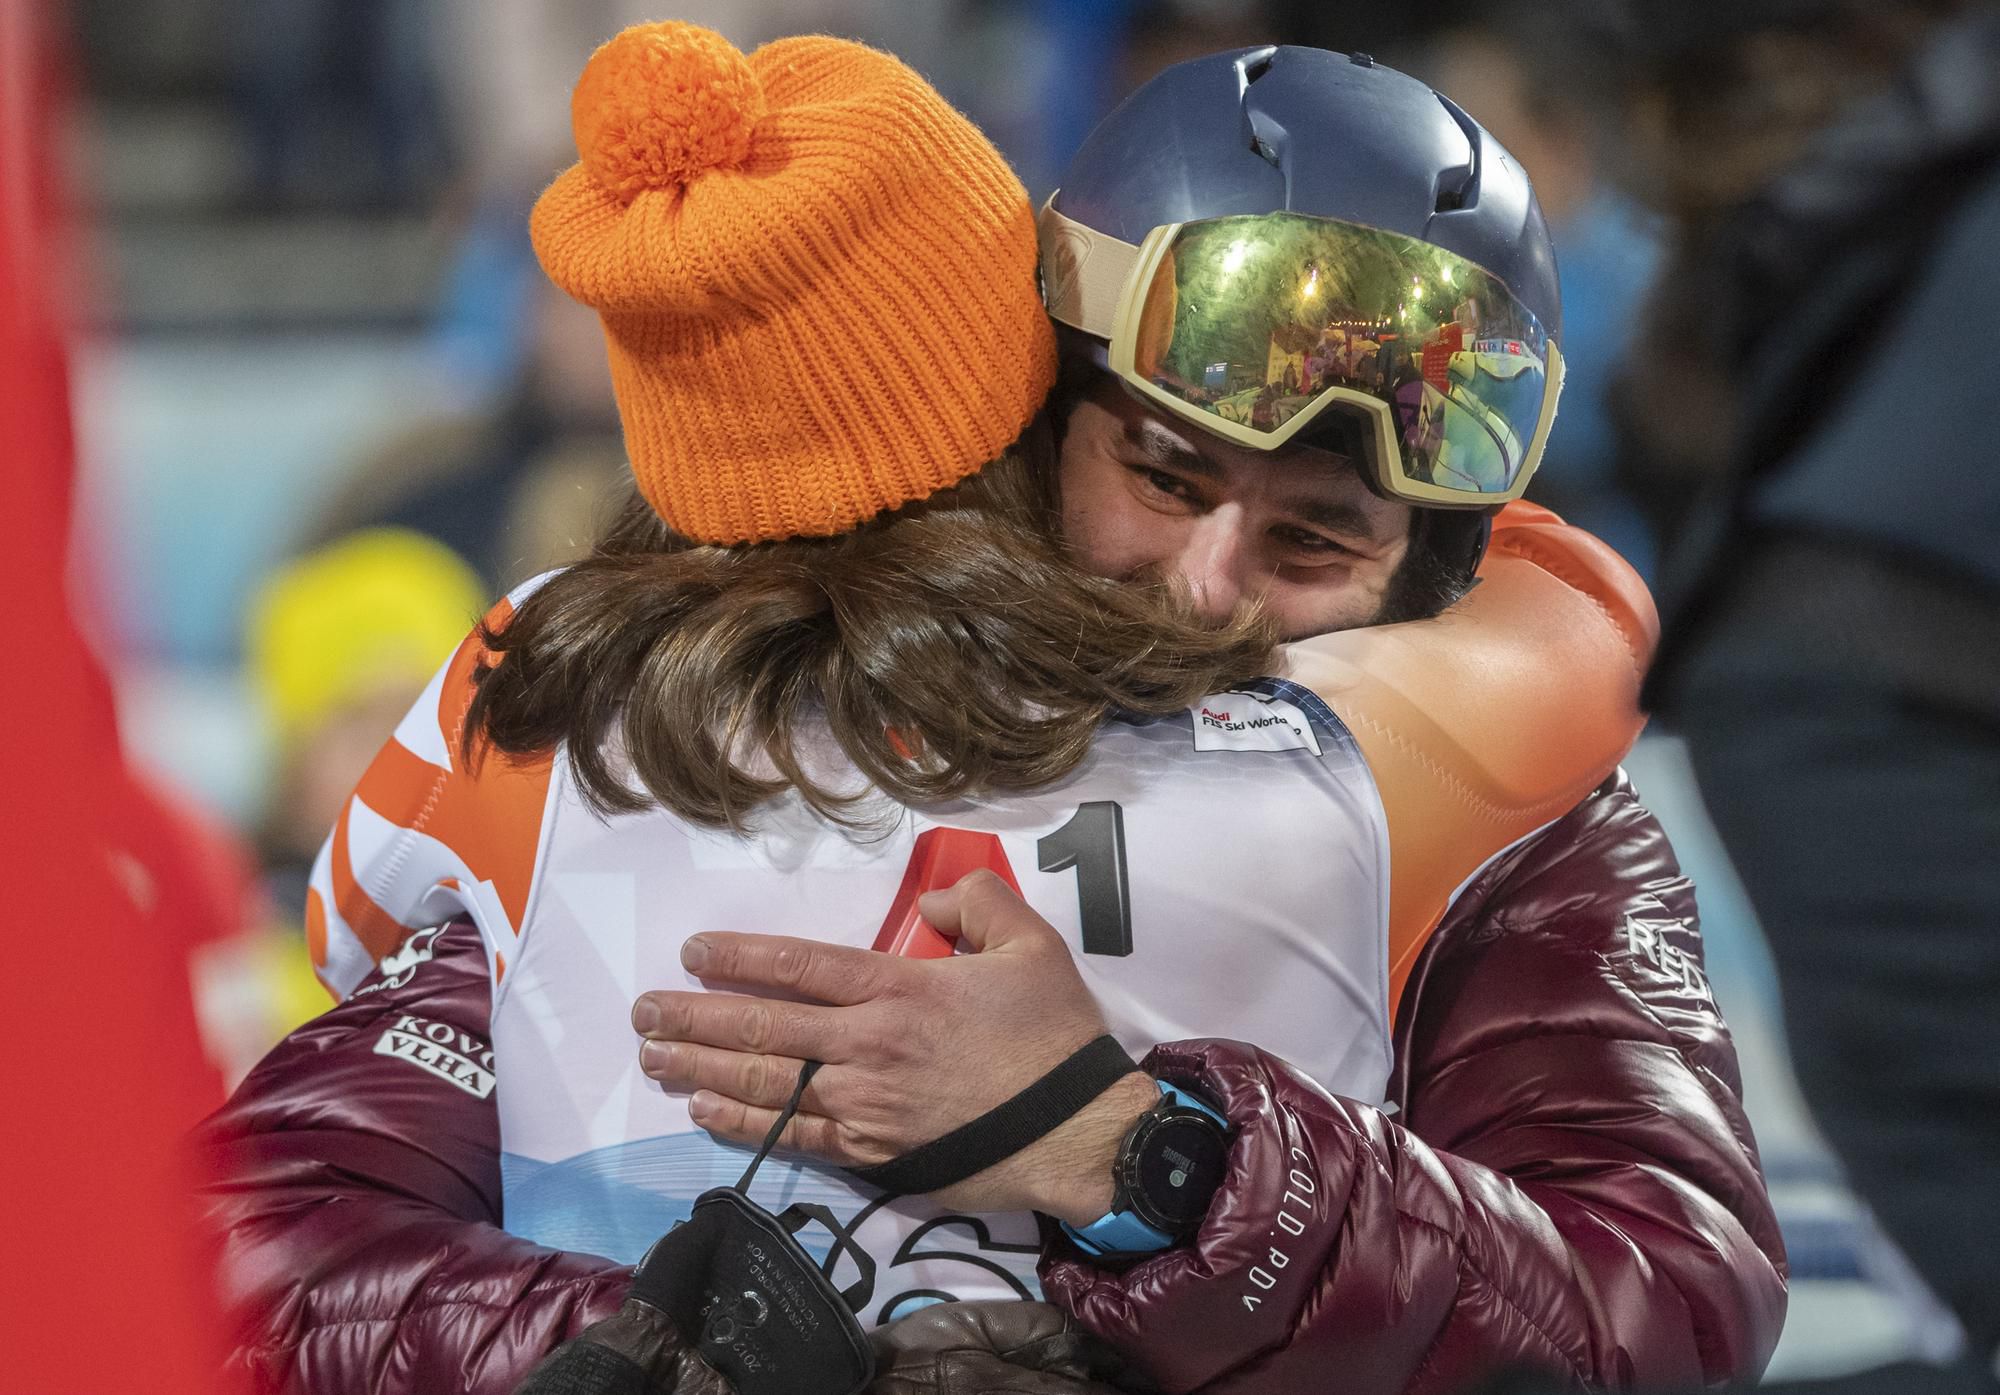 Radosť Petry Vlhovej z víťazstva v nočnom slalome vo Flachau.